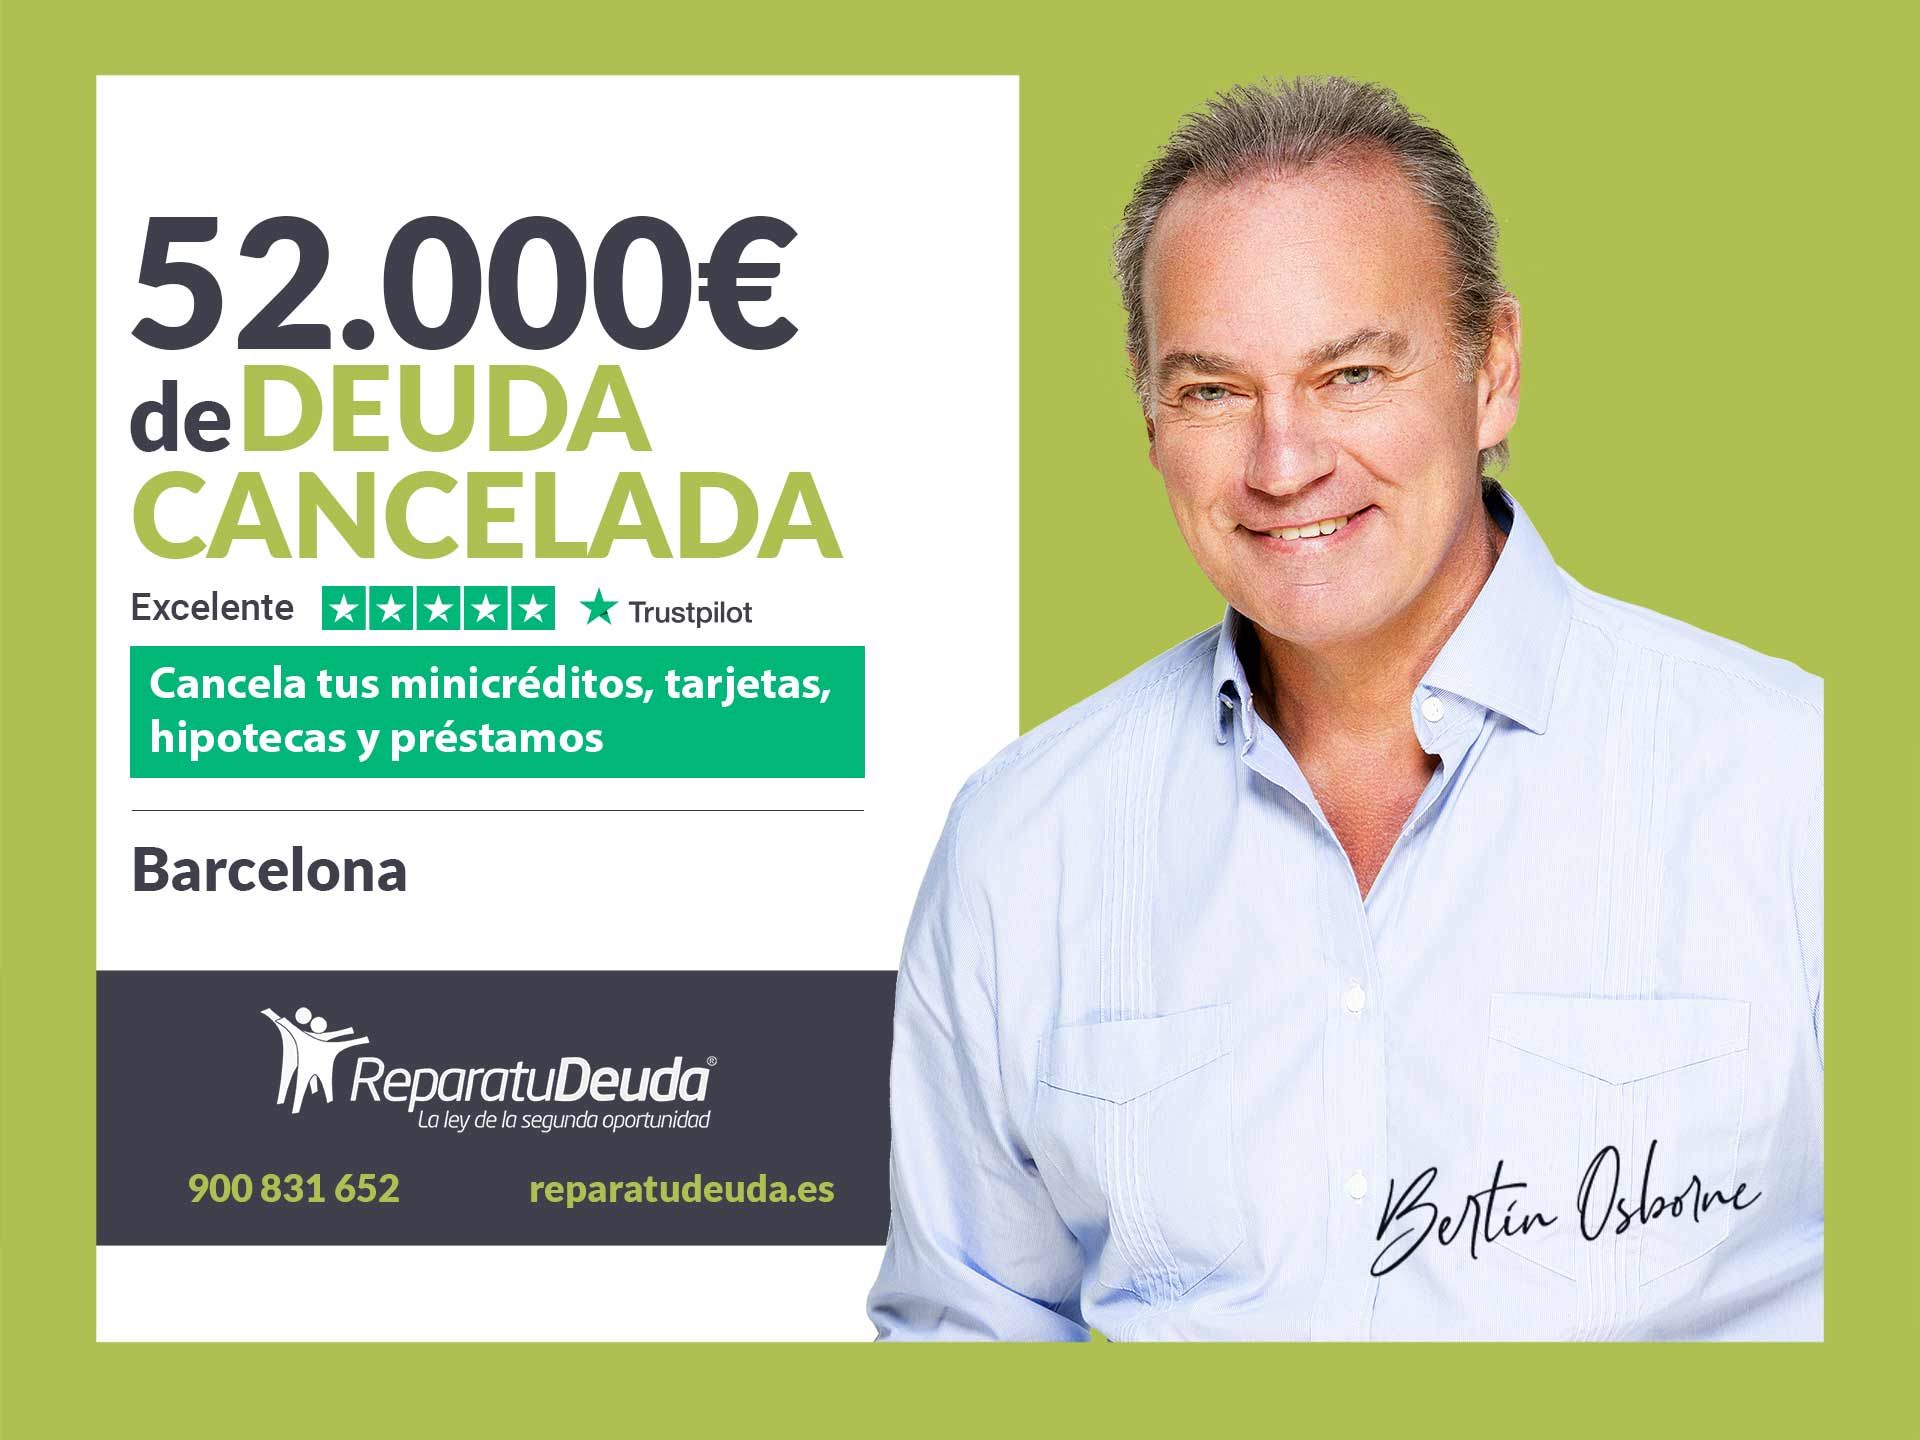 Repara tu Deuda Abogados cancela 52.000? en Barcelona (Catalunya) con la Ley de Segunda Oportunidad